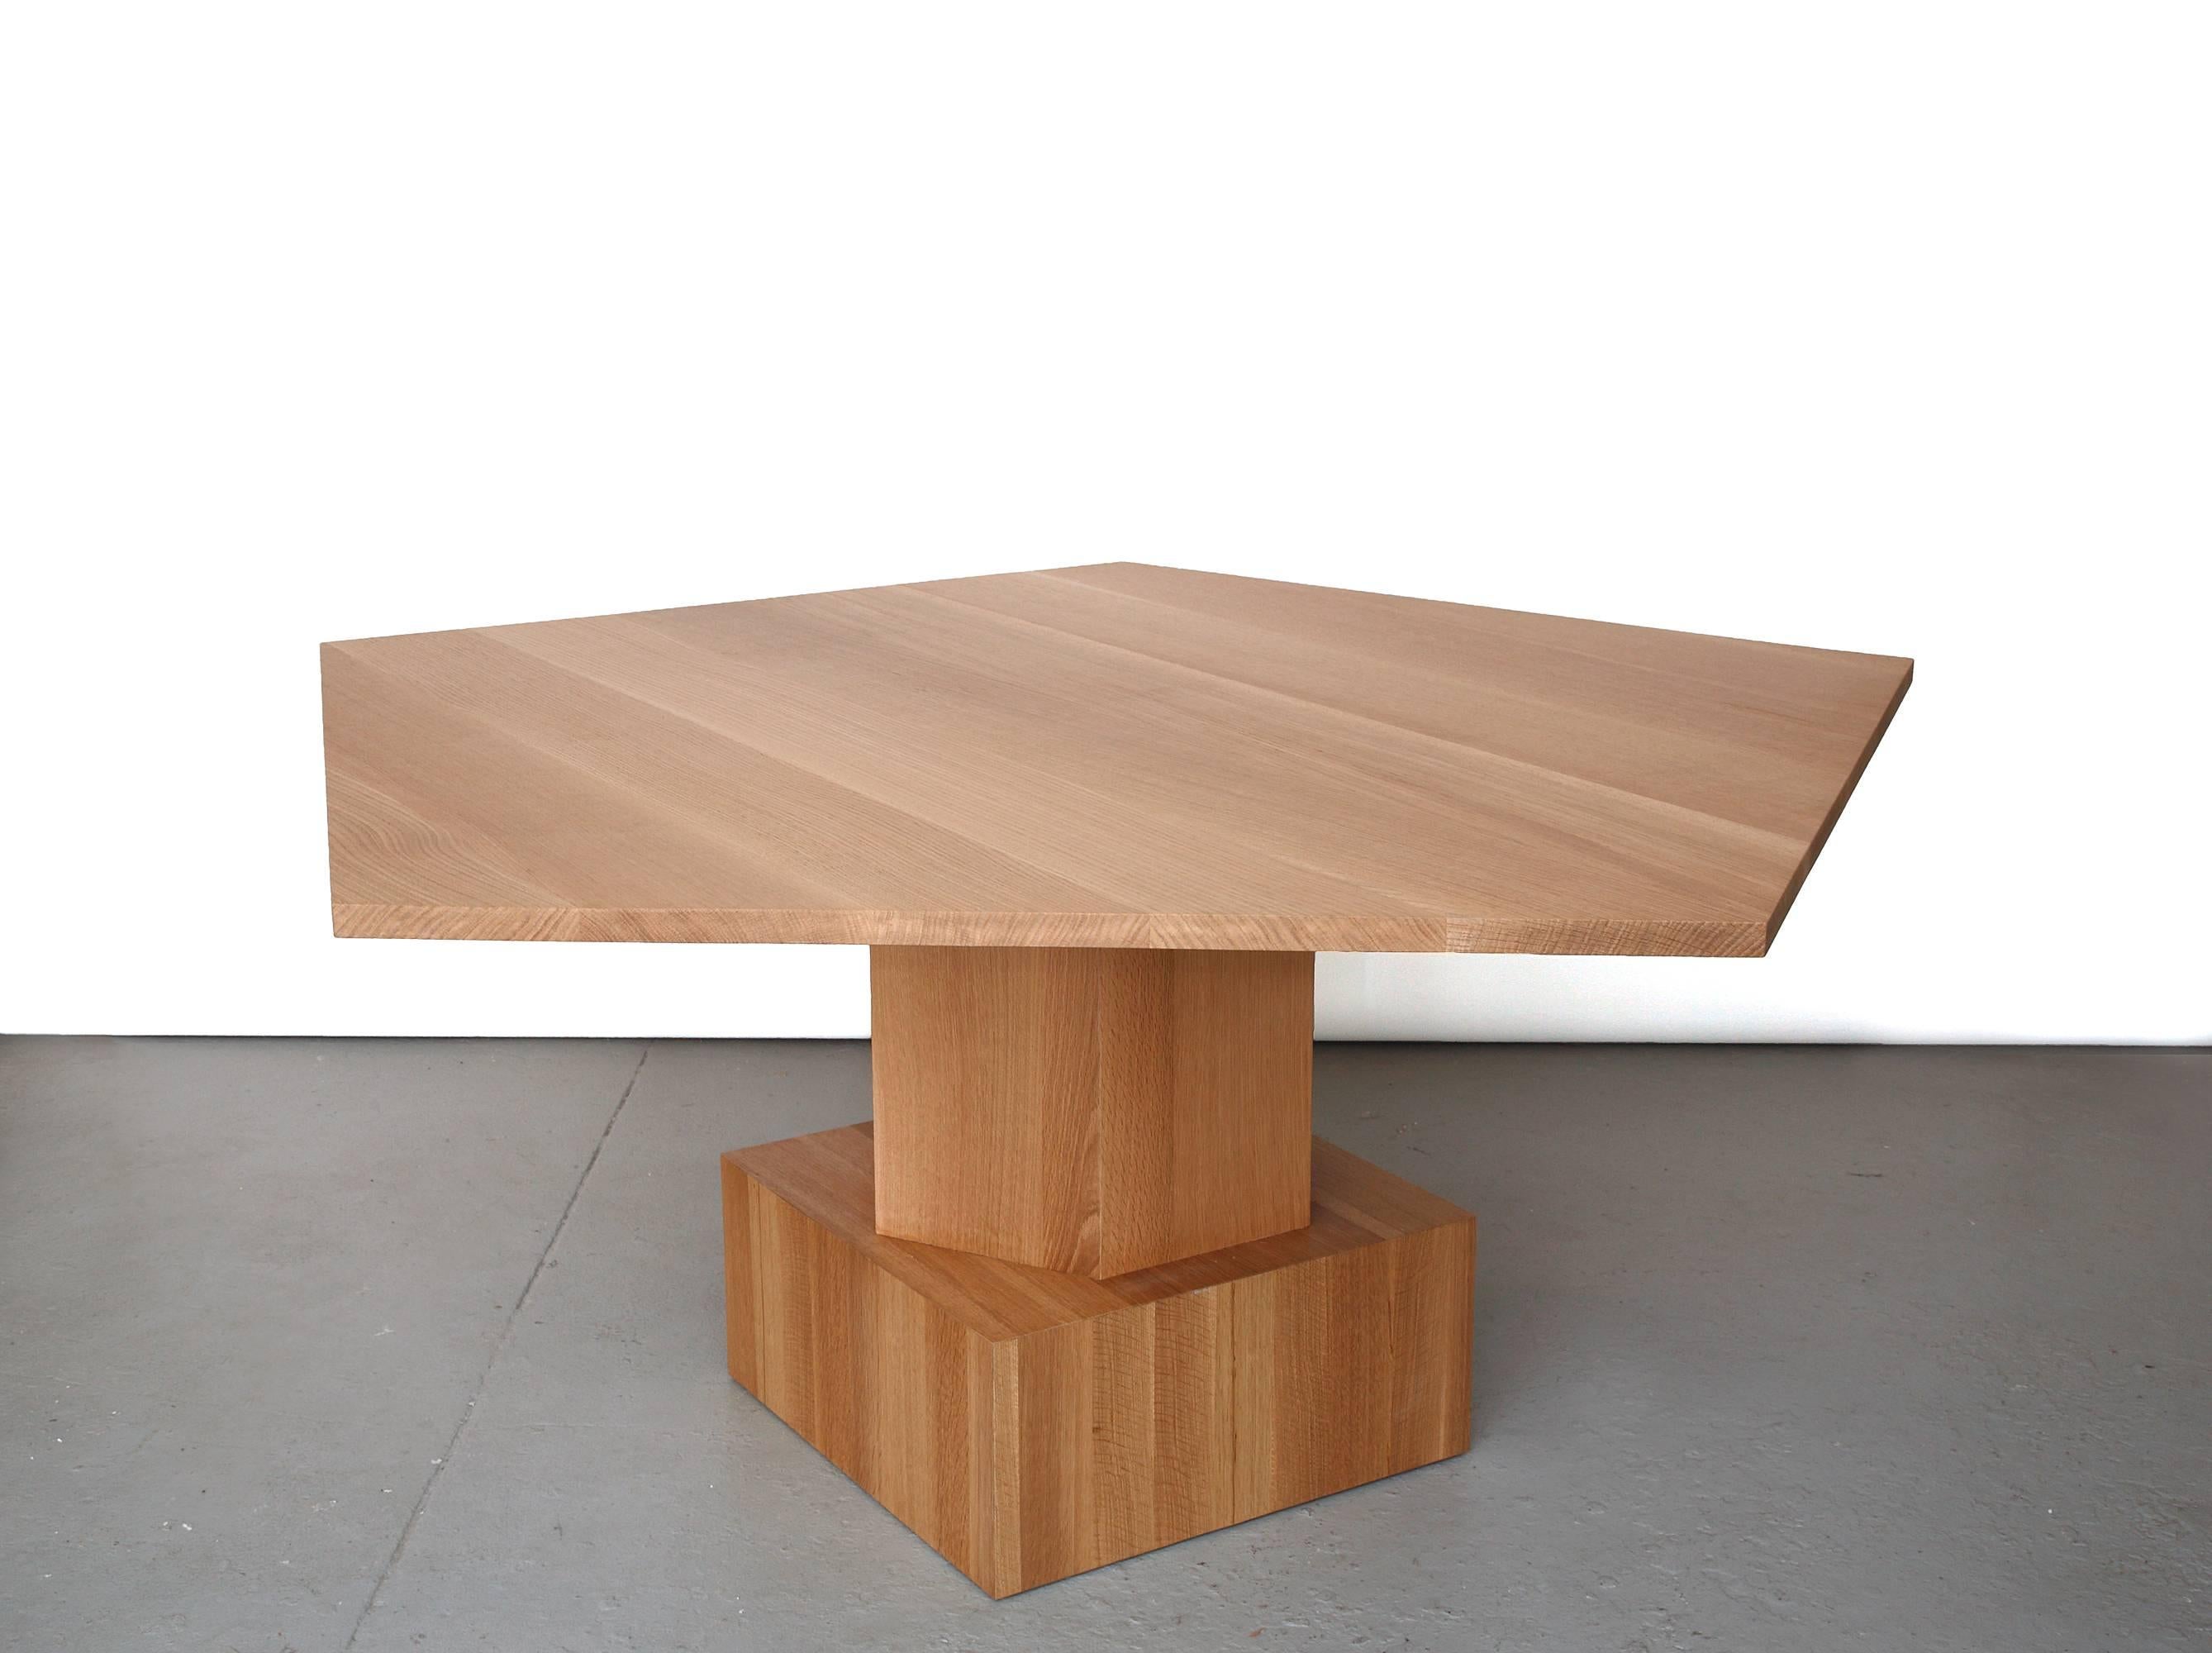 Une table à manger étonnante de Tinatin Kilaberidze.
Tinatin Kilaberidze, qui travaille avec des formes géométriques, a choisi cette forme pentagonale pour une table à manger qui peut être utilisée seule ou à deux pour accueillir 10 à 12 personnes.